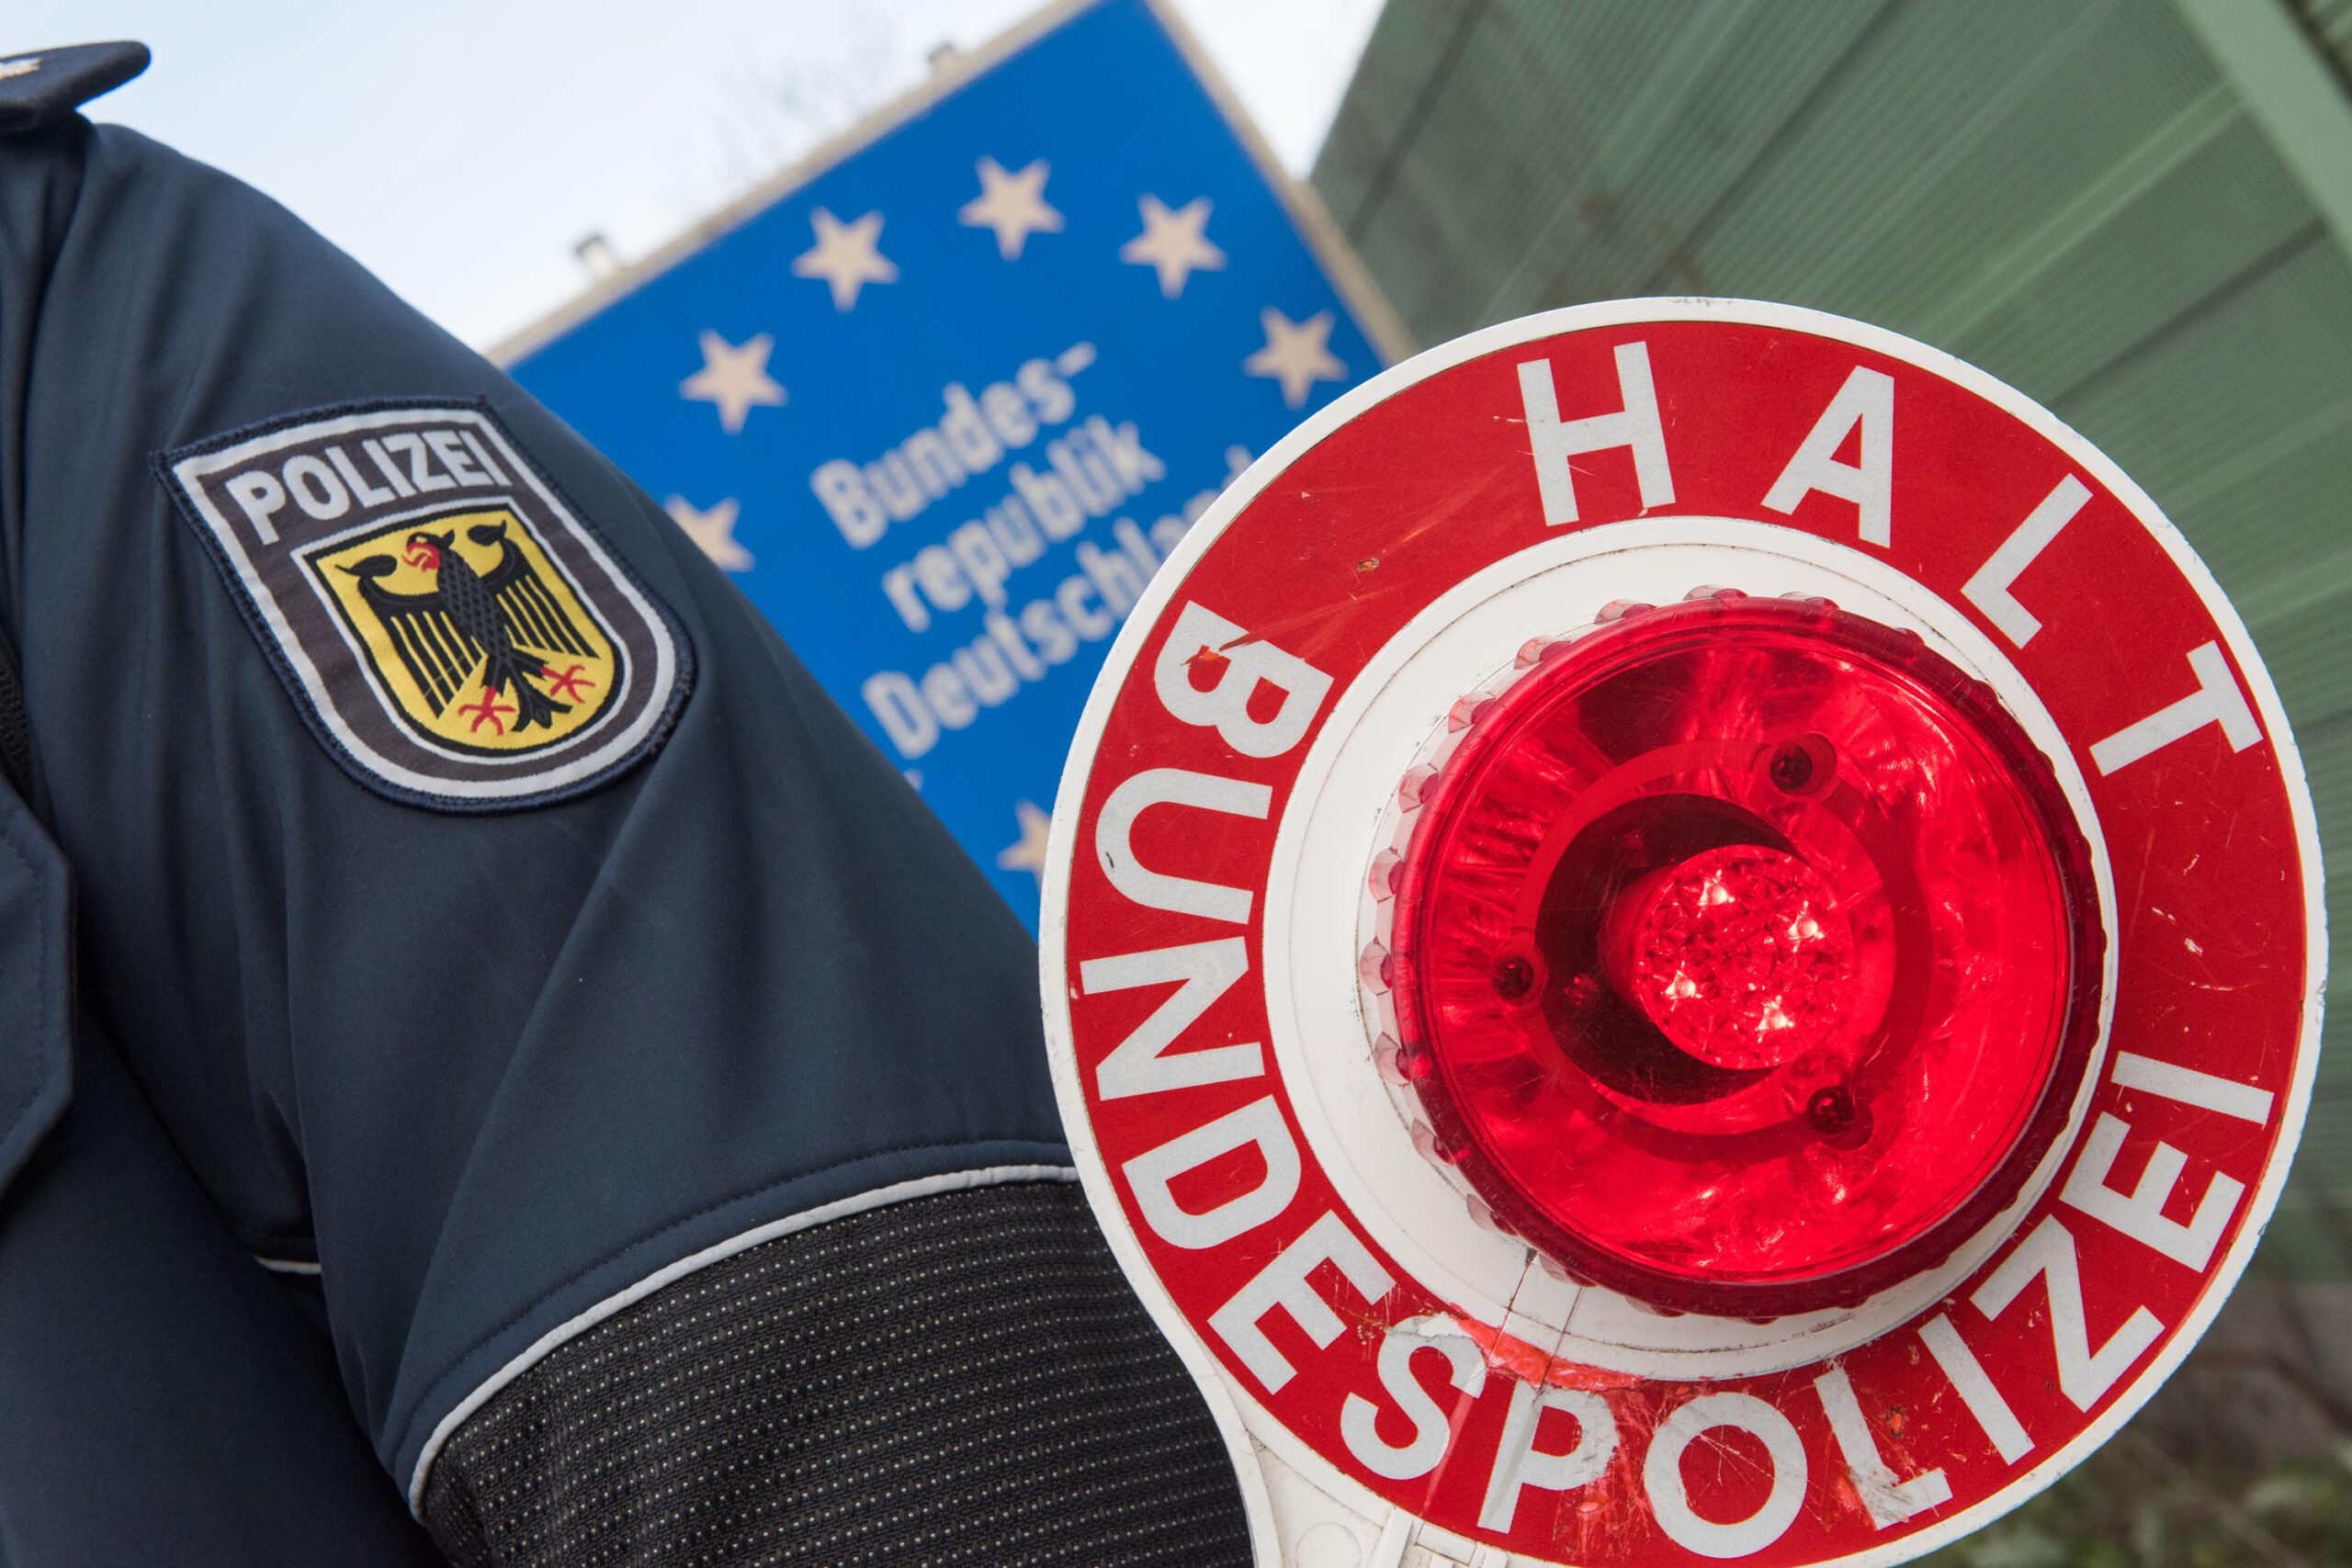 Systematisch Diebeszüge durch Fernzüge unternommen: Bundespolizei Hamm verhaftet 5 Verdächtige